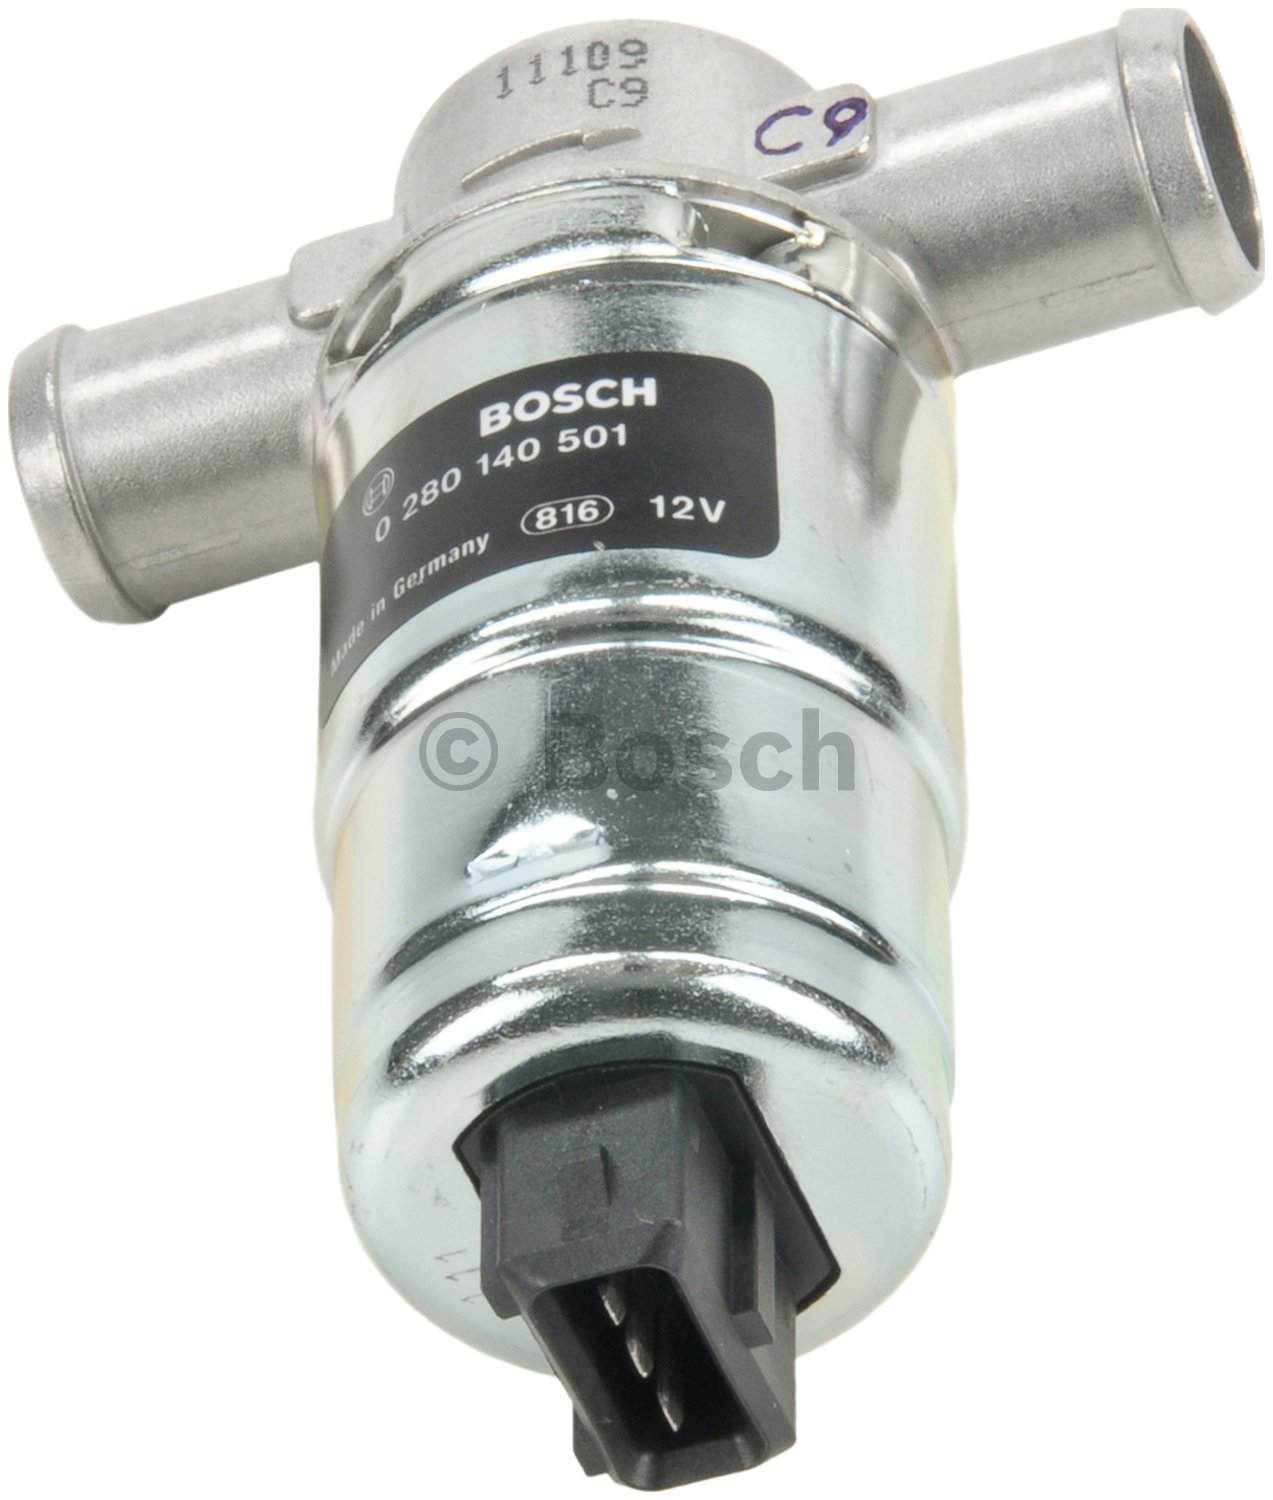 Bosch 0280140501